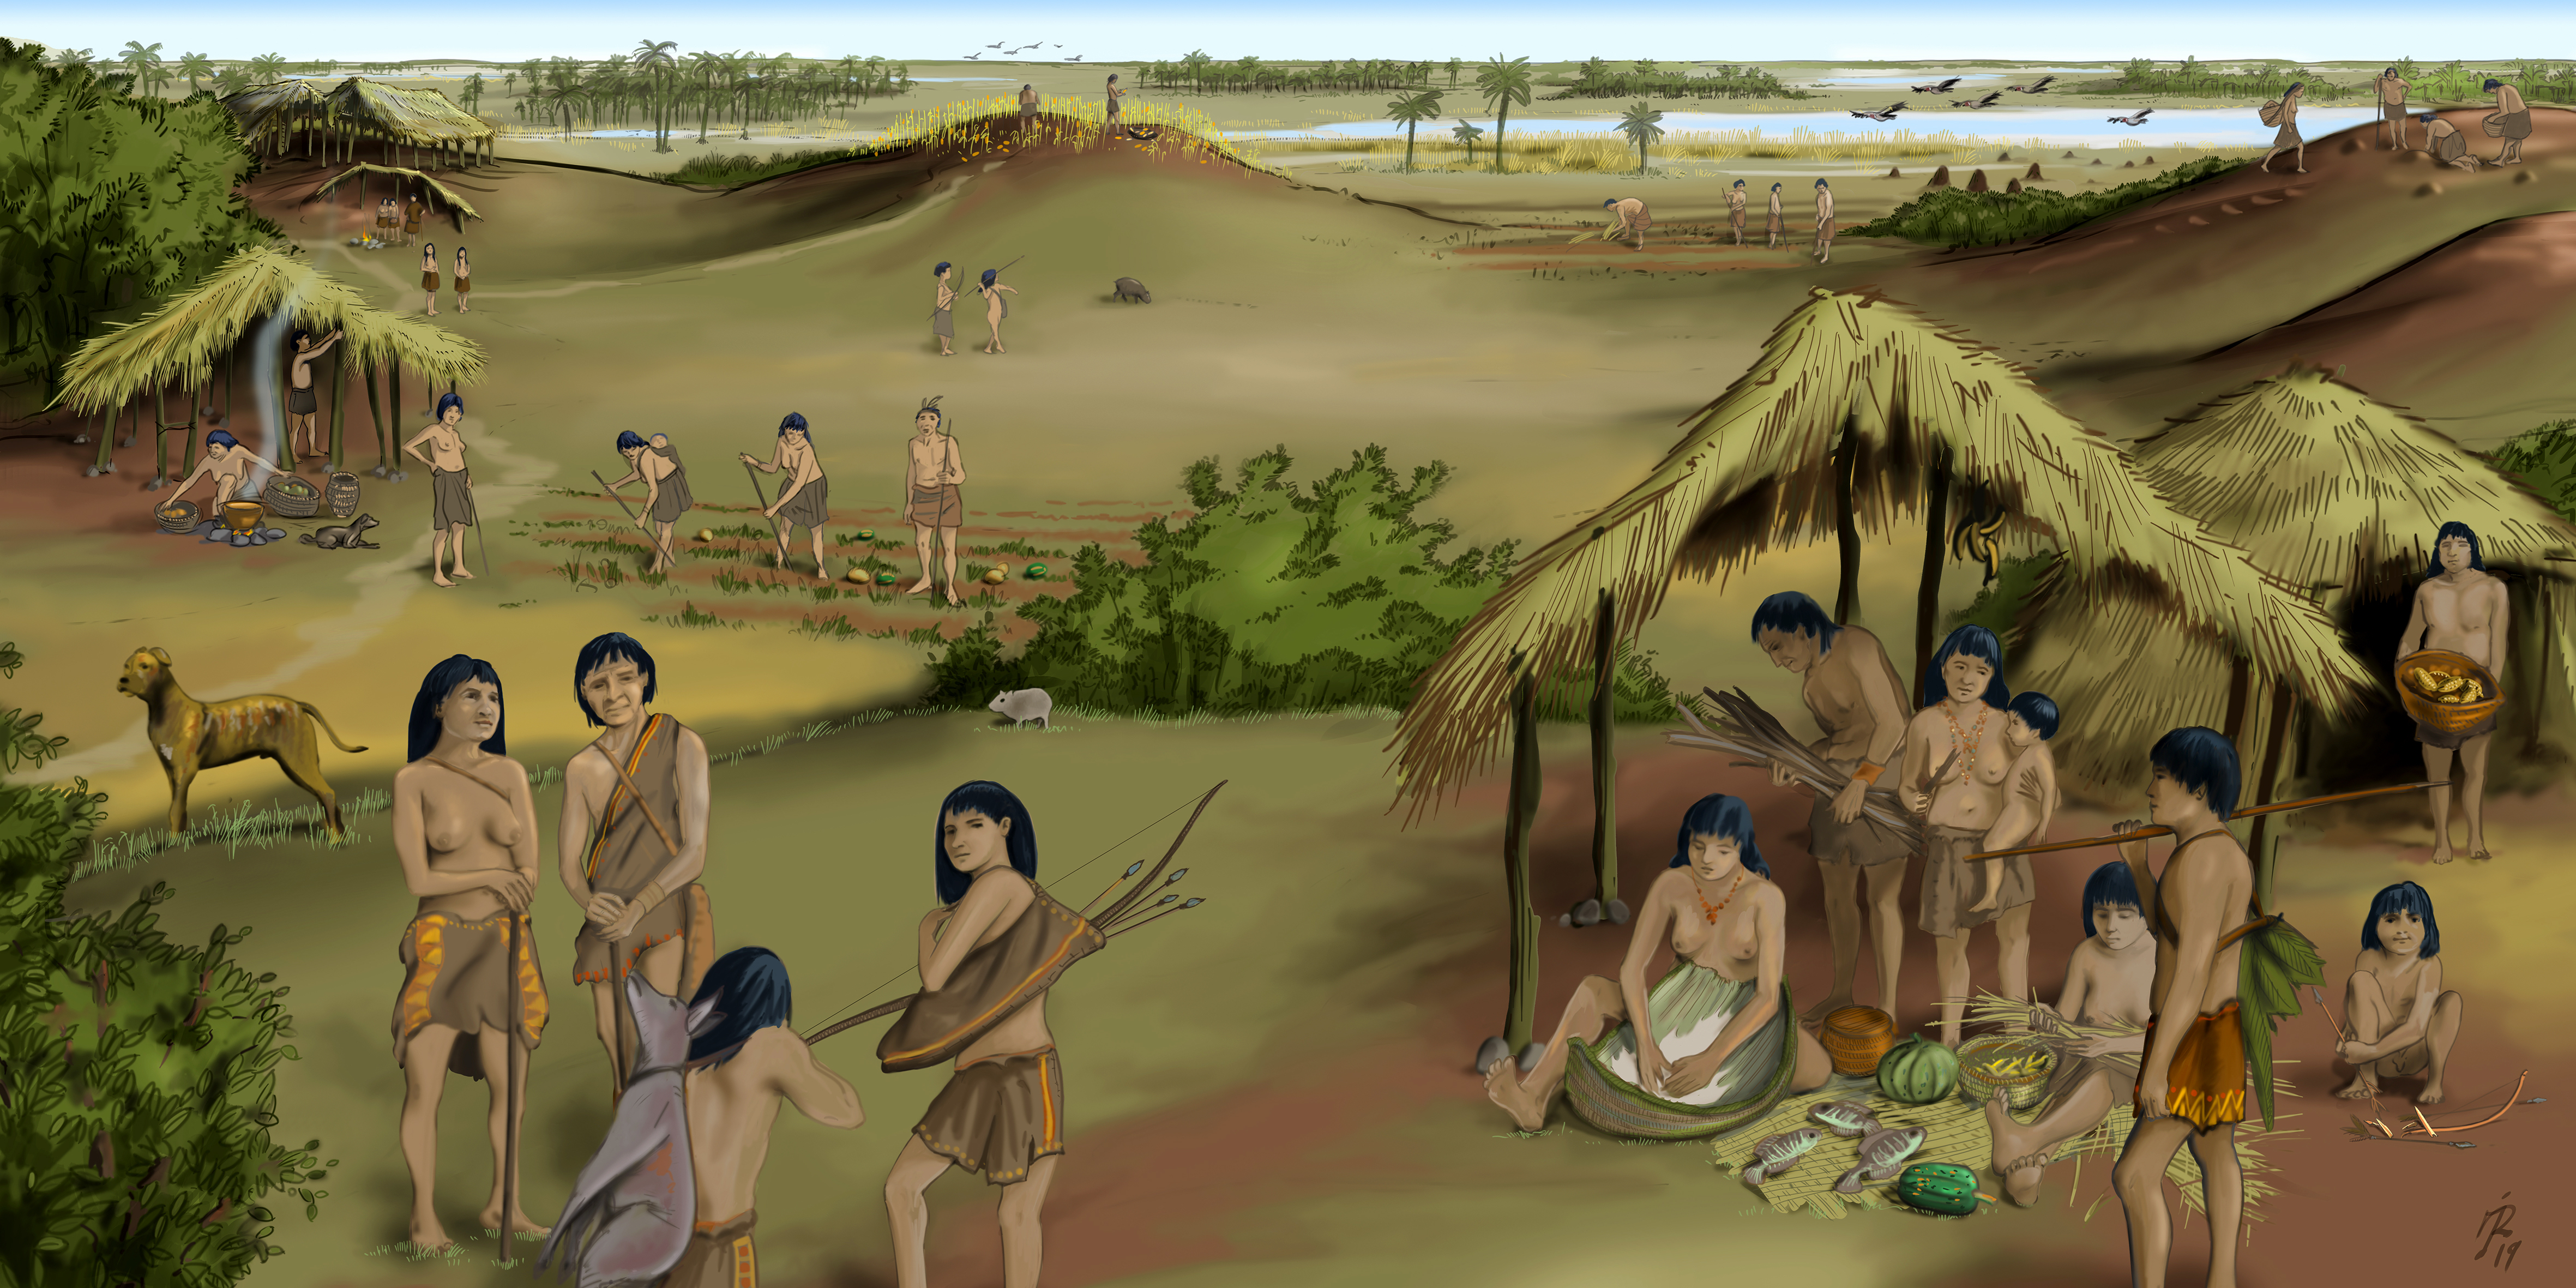  Paisaje: Cerritos de indios (La Canoa T02P105)